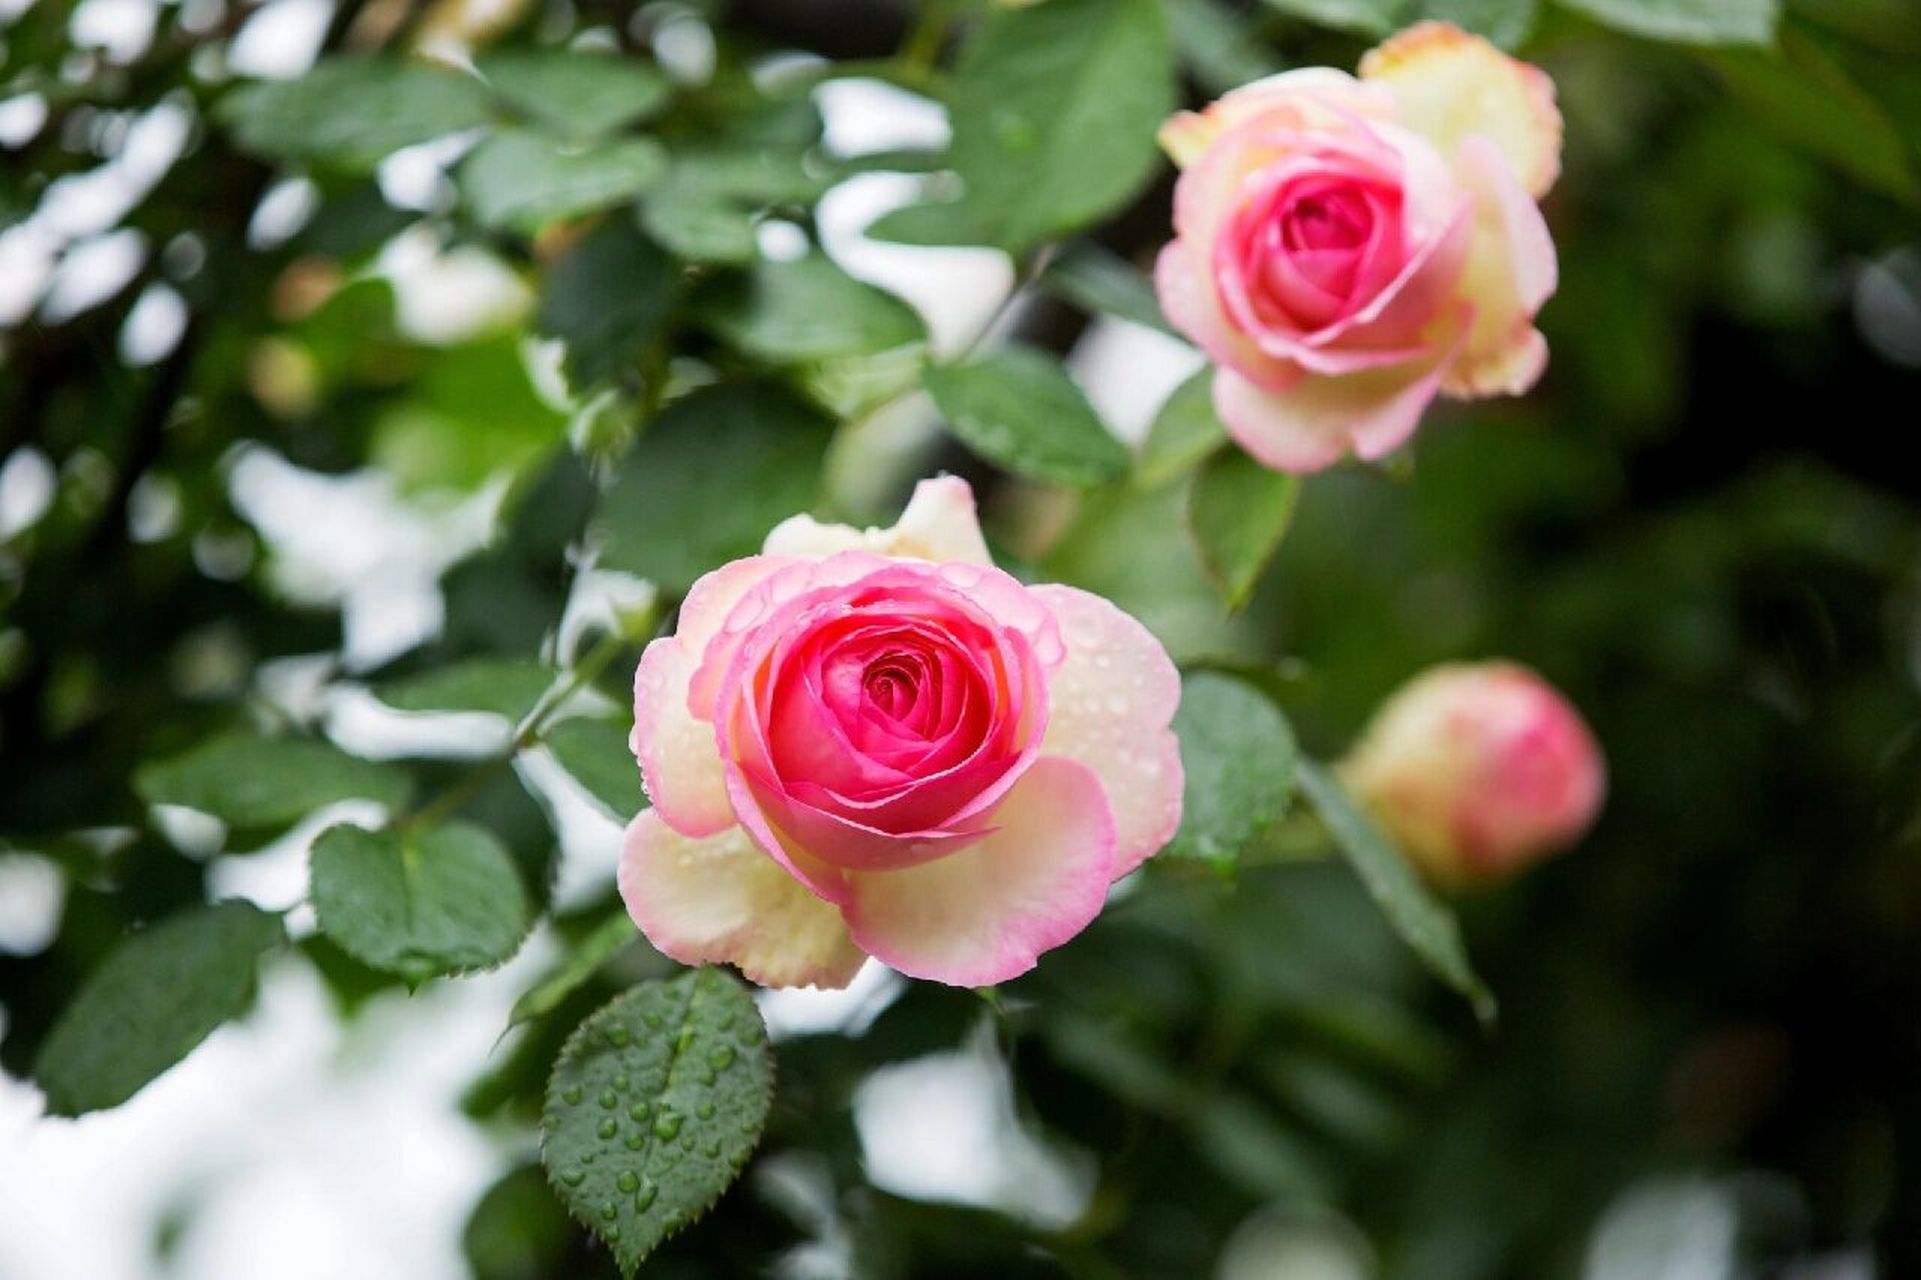 雨中的玫瑰就像刚出水芙蓉,水水嫩嫩的,格外迷人